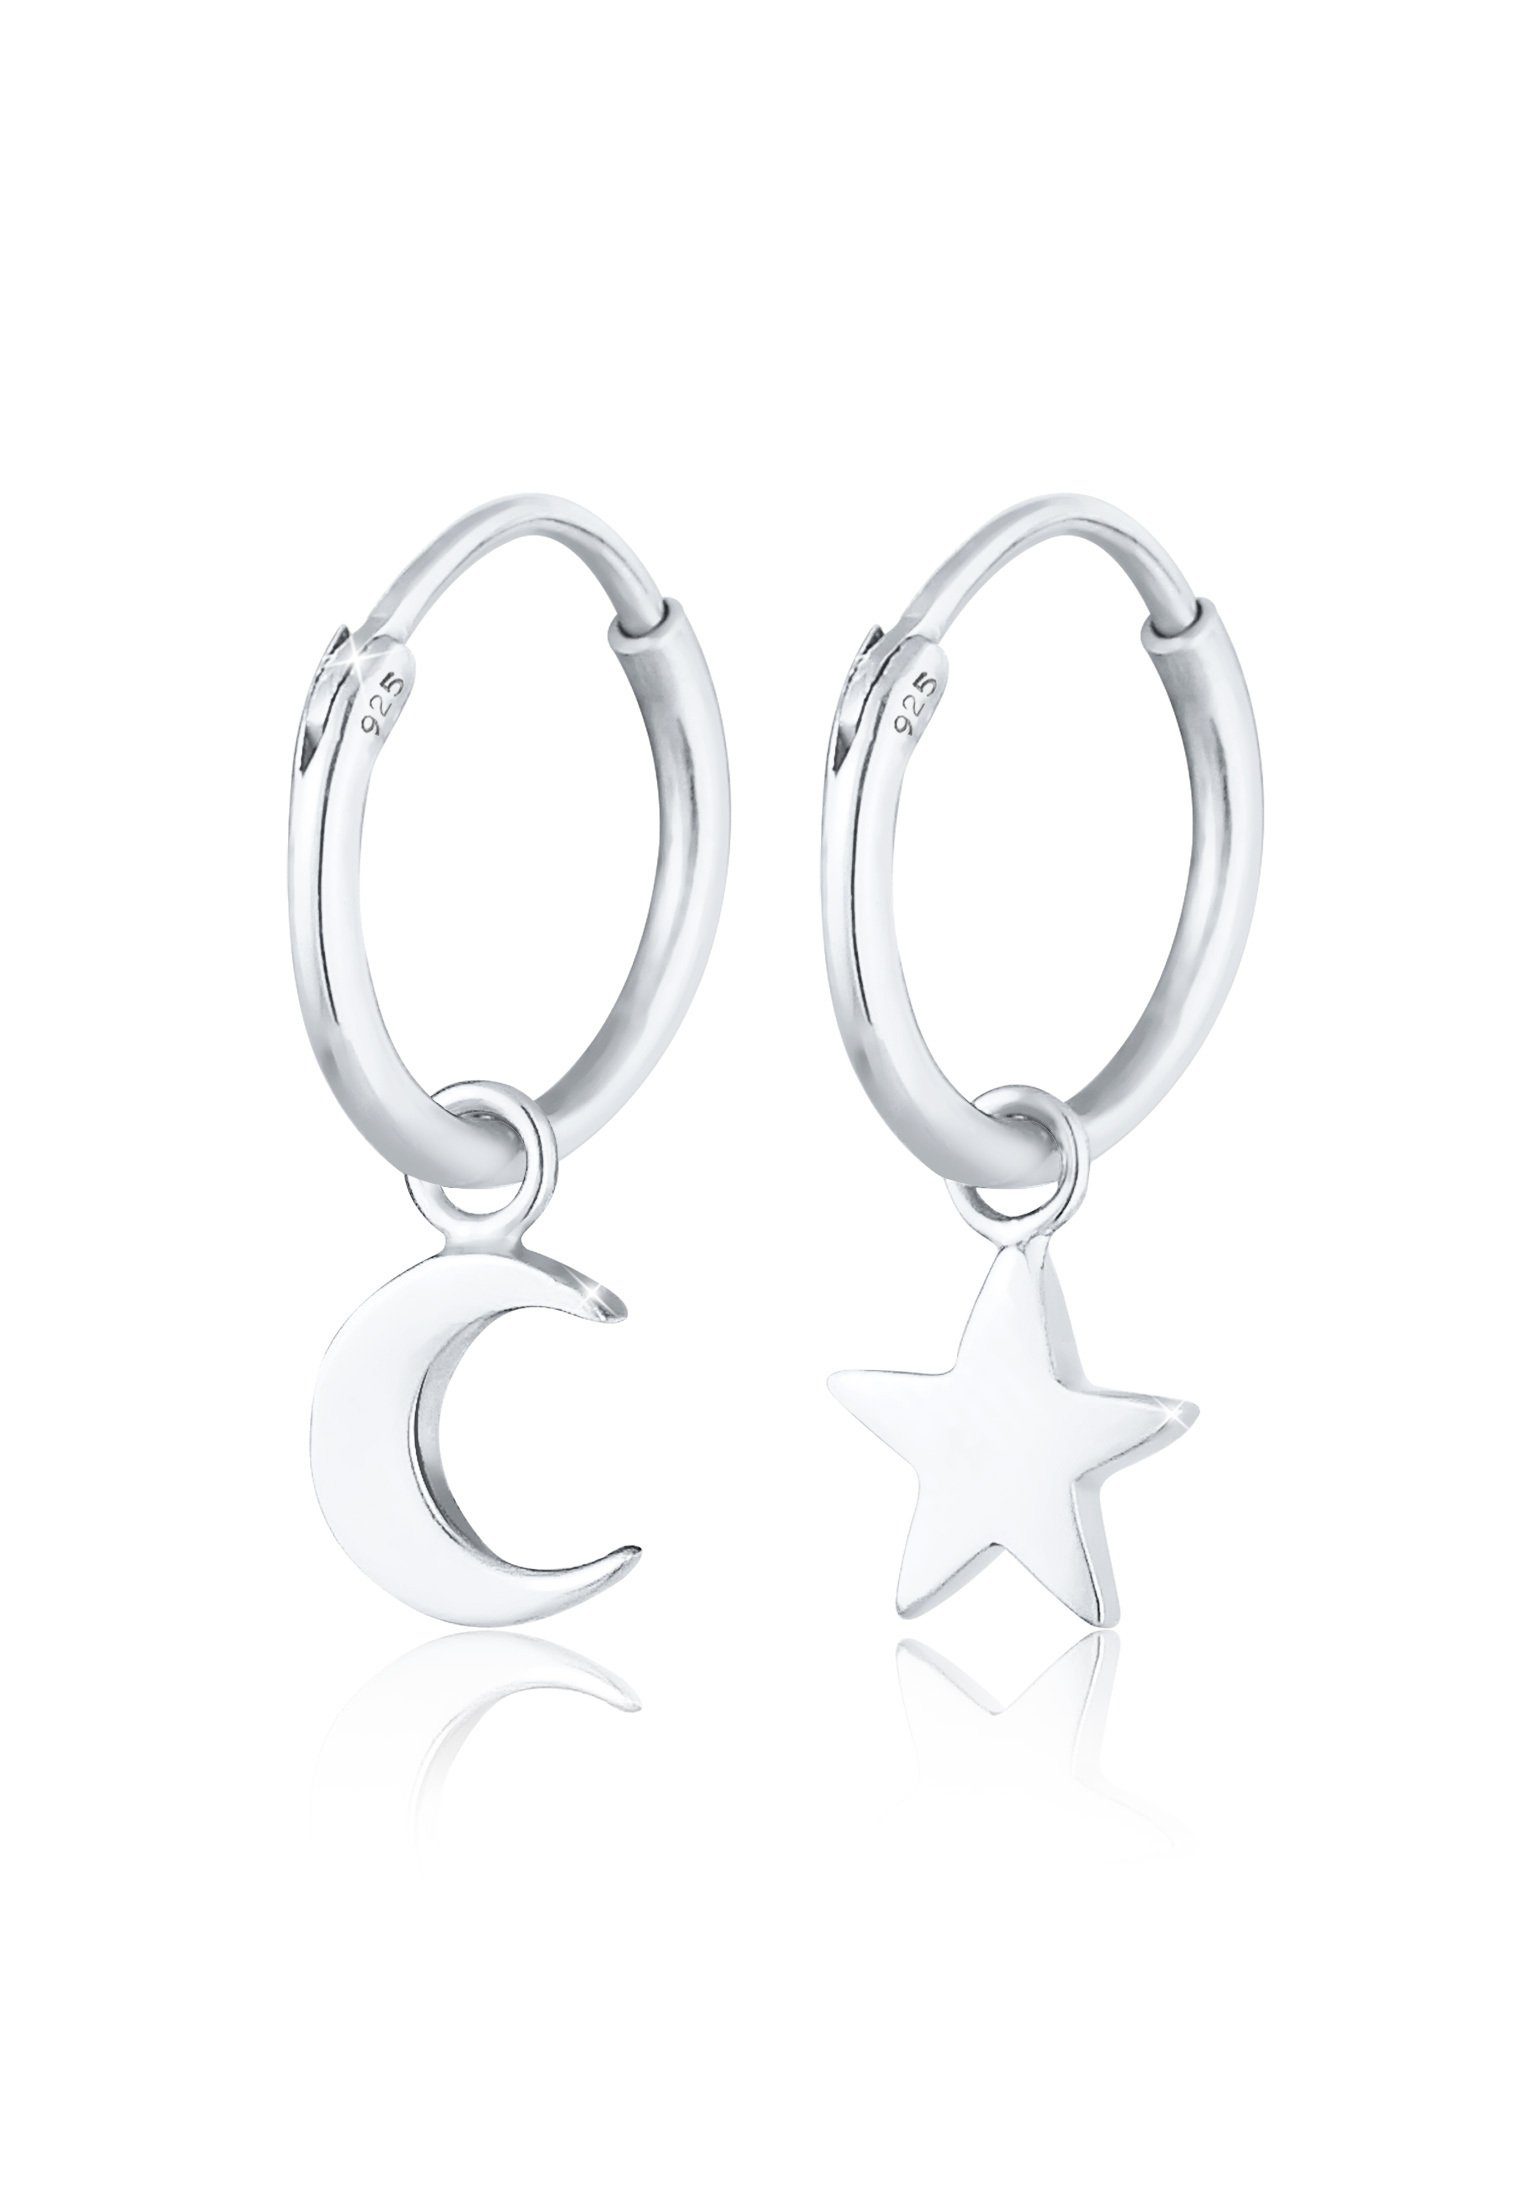 Elli Paar Creolen Creolen Sterne Mond Trend 925 Silber, Sterne, Halbmond,  Astro | Creolen